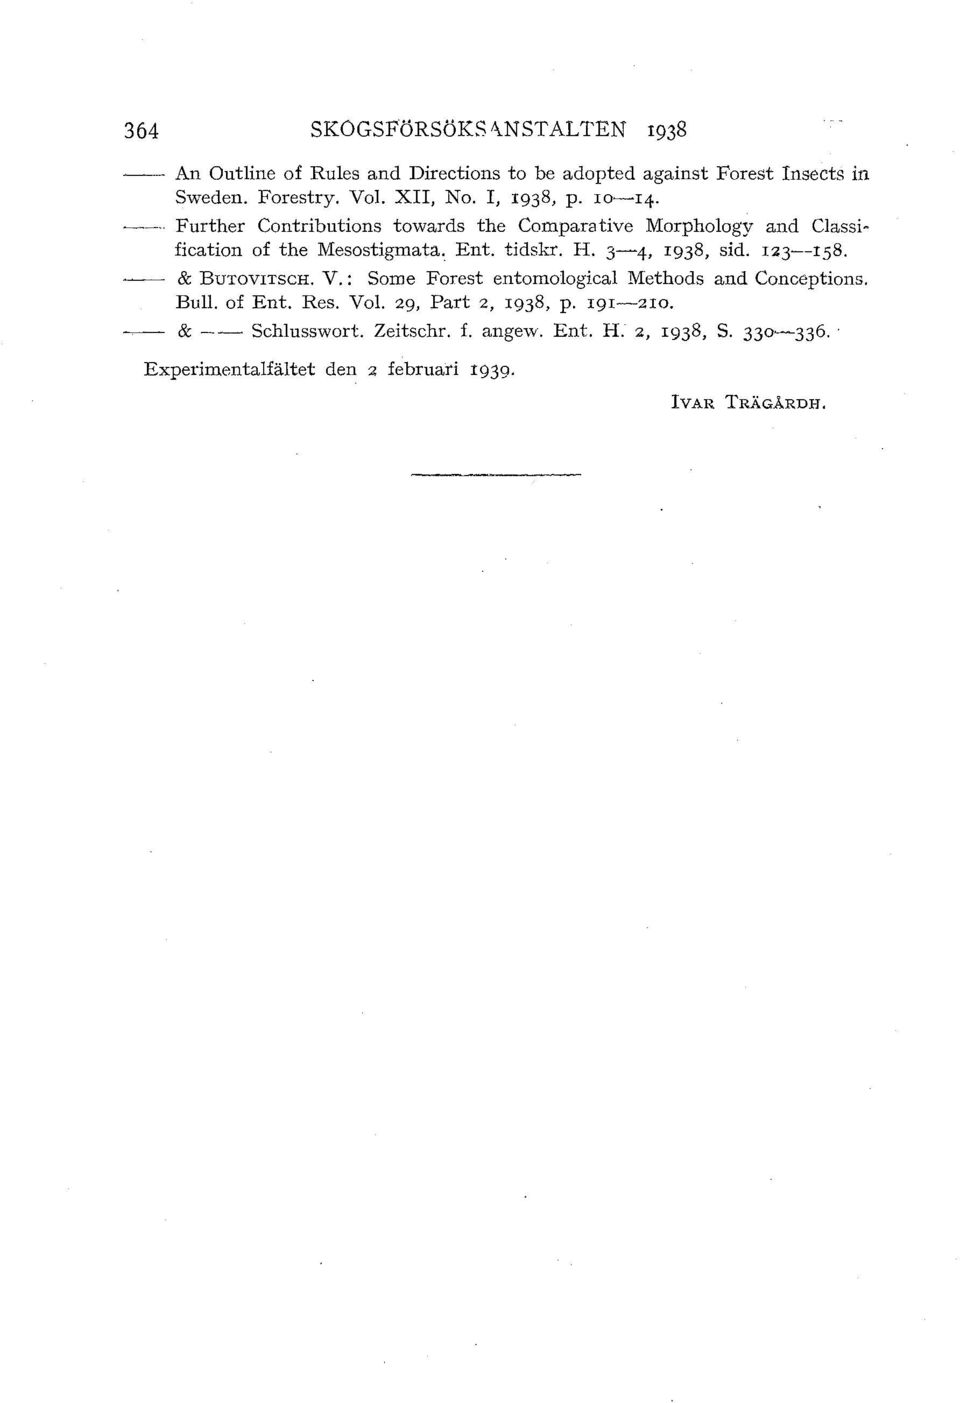 tidskr. H. -, I98, sid. I2--18. & BuTovnscH. V. : Some Forest entomologkal Methods and Conceptions. Bull. of Ent. Res. Vol.